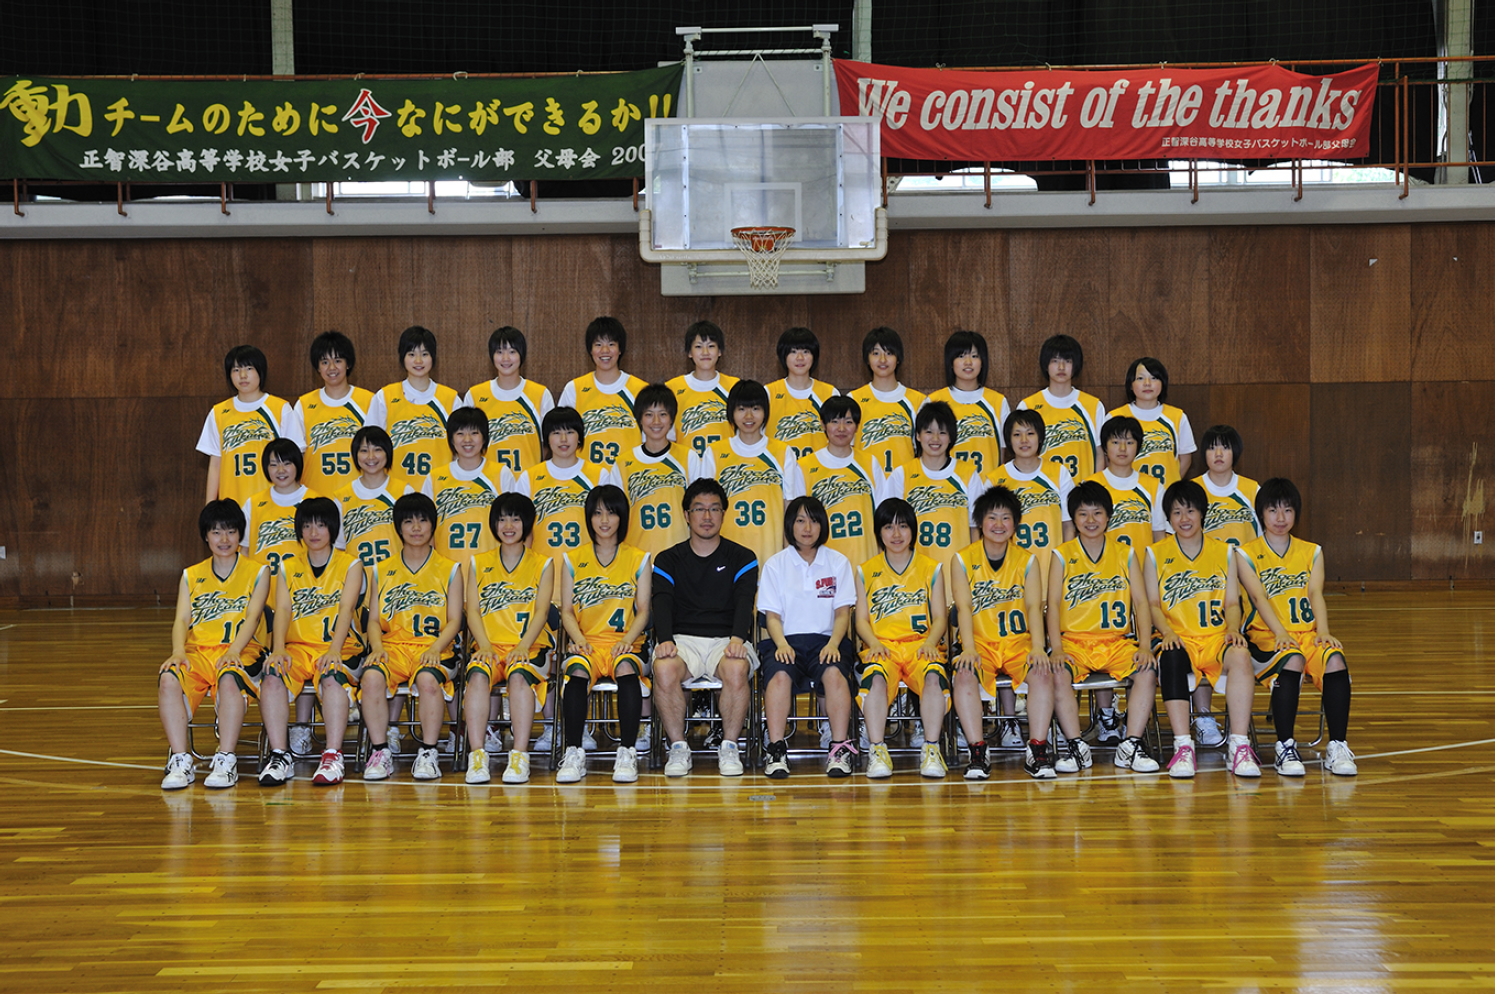 女子バスケットボール部 ギャラリー 正智深谷高等学校